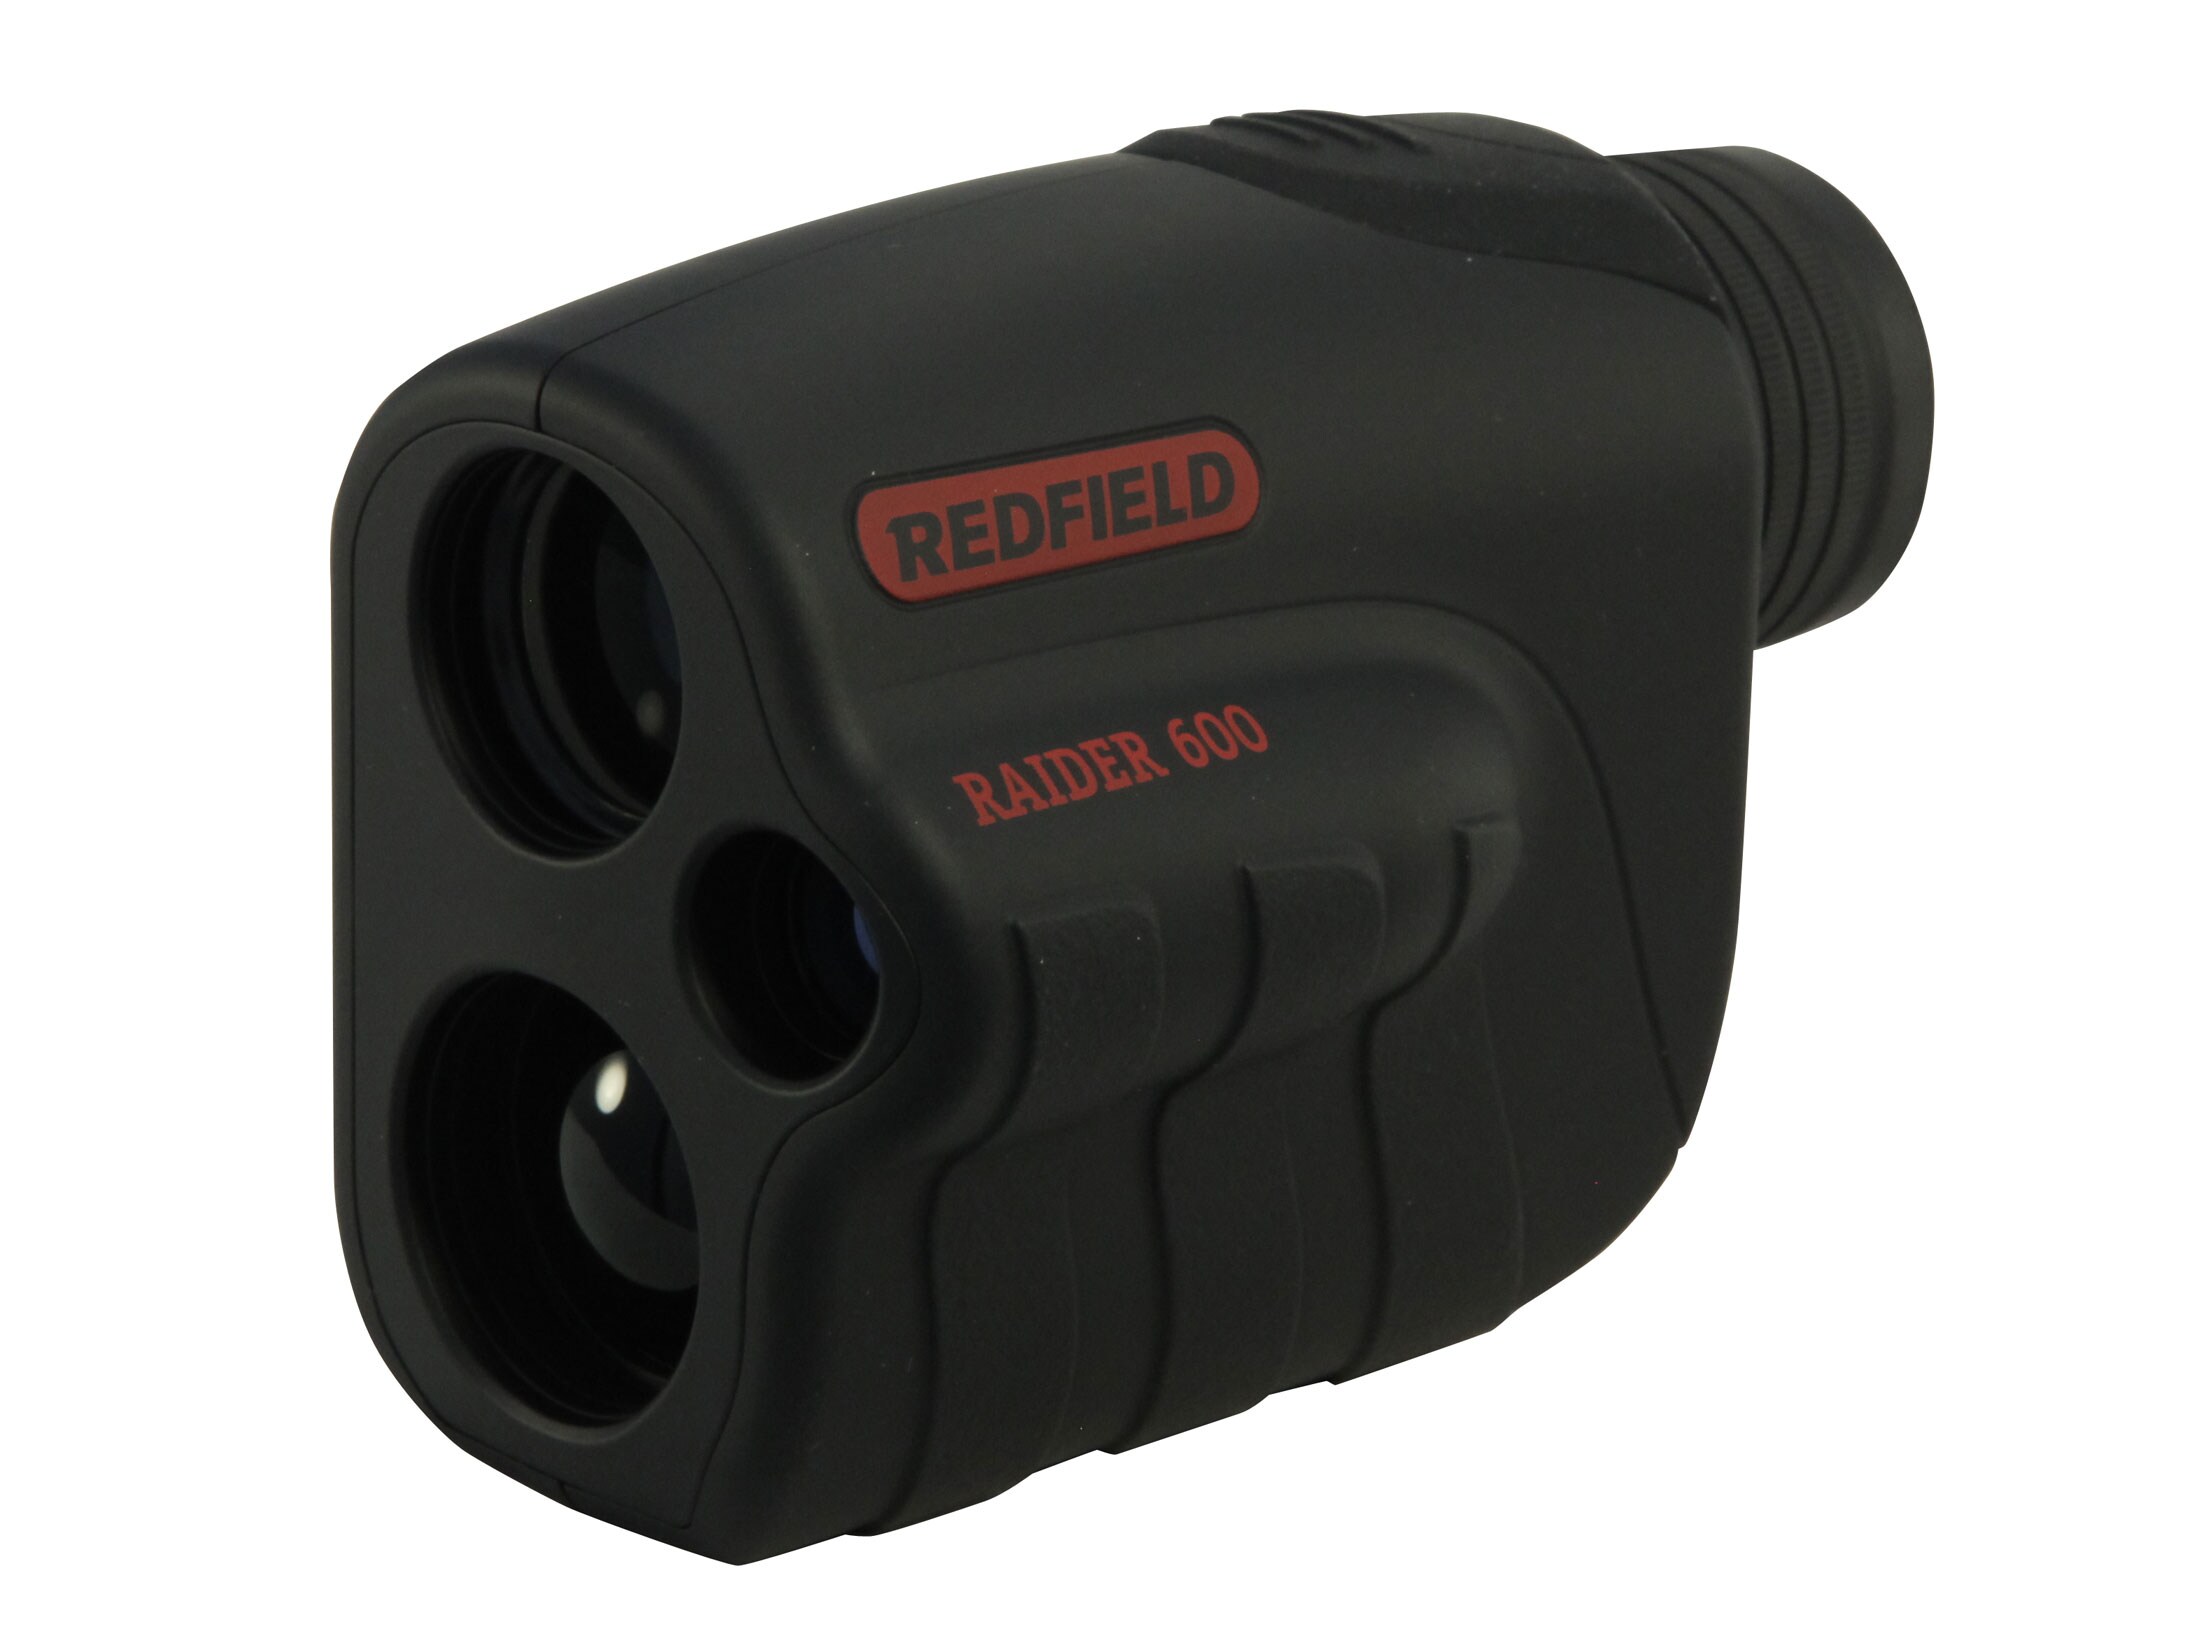 REDFIELD RAIDER 650 6-600yds 6X DIGITAL LASER RANGEFINDER 170636 NEW! 